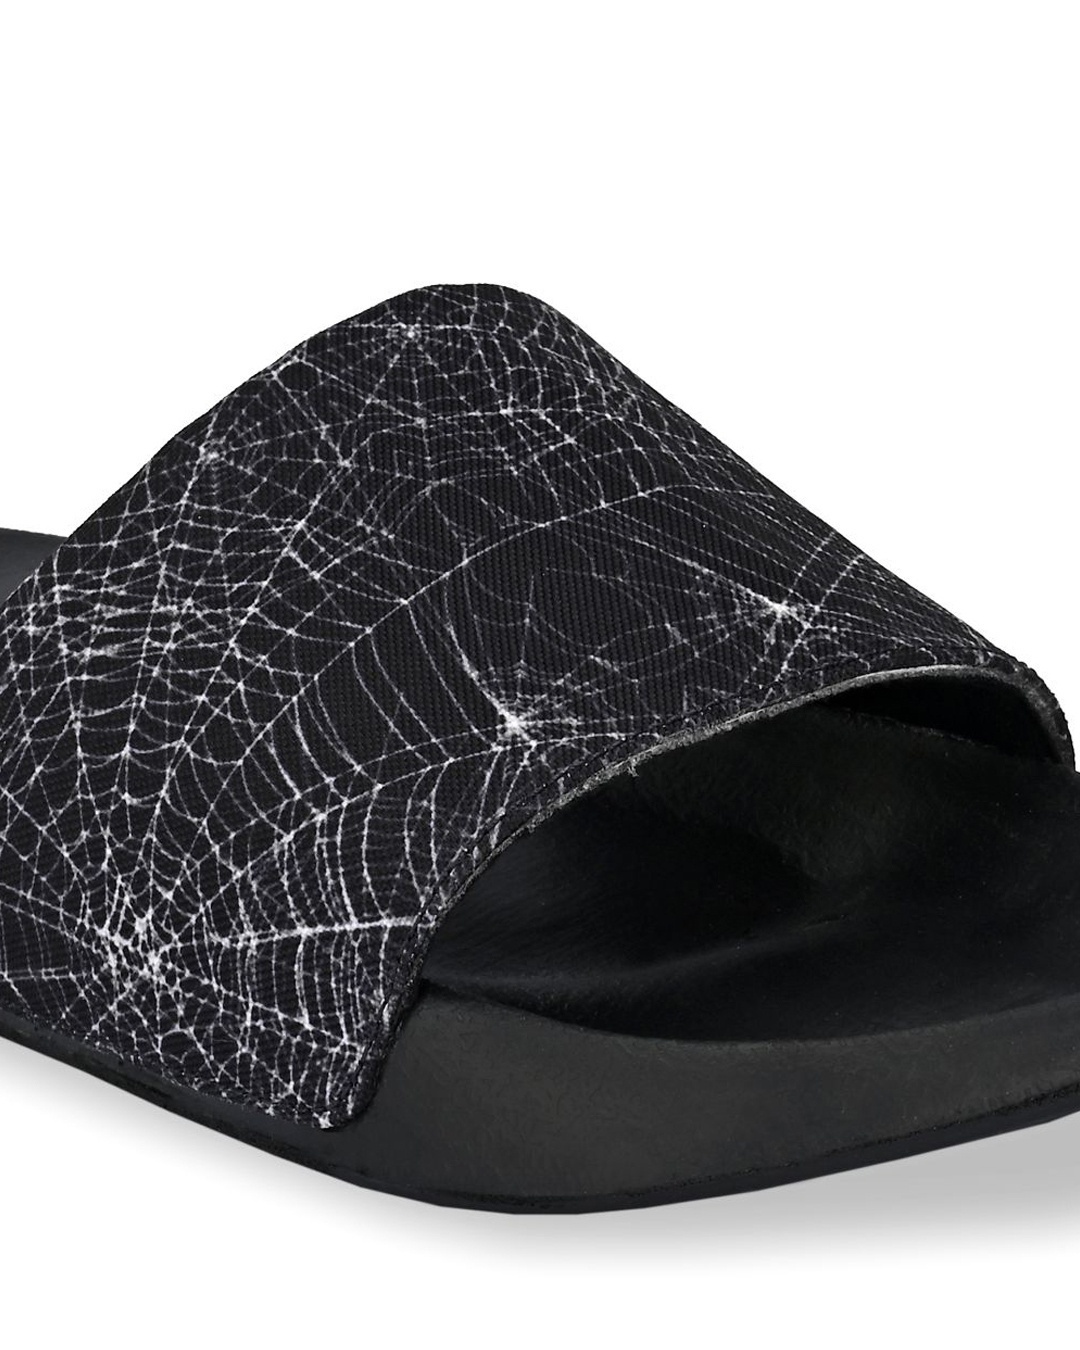 Shop Men Black And White Spider Web Printed Slider